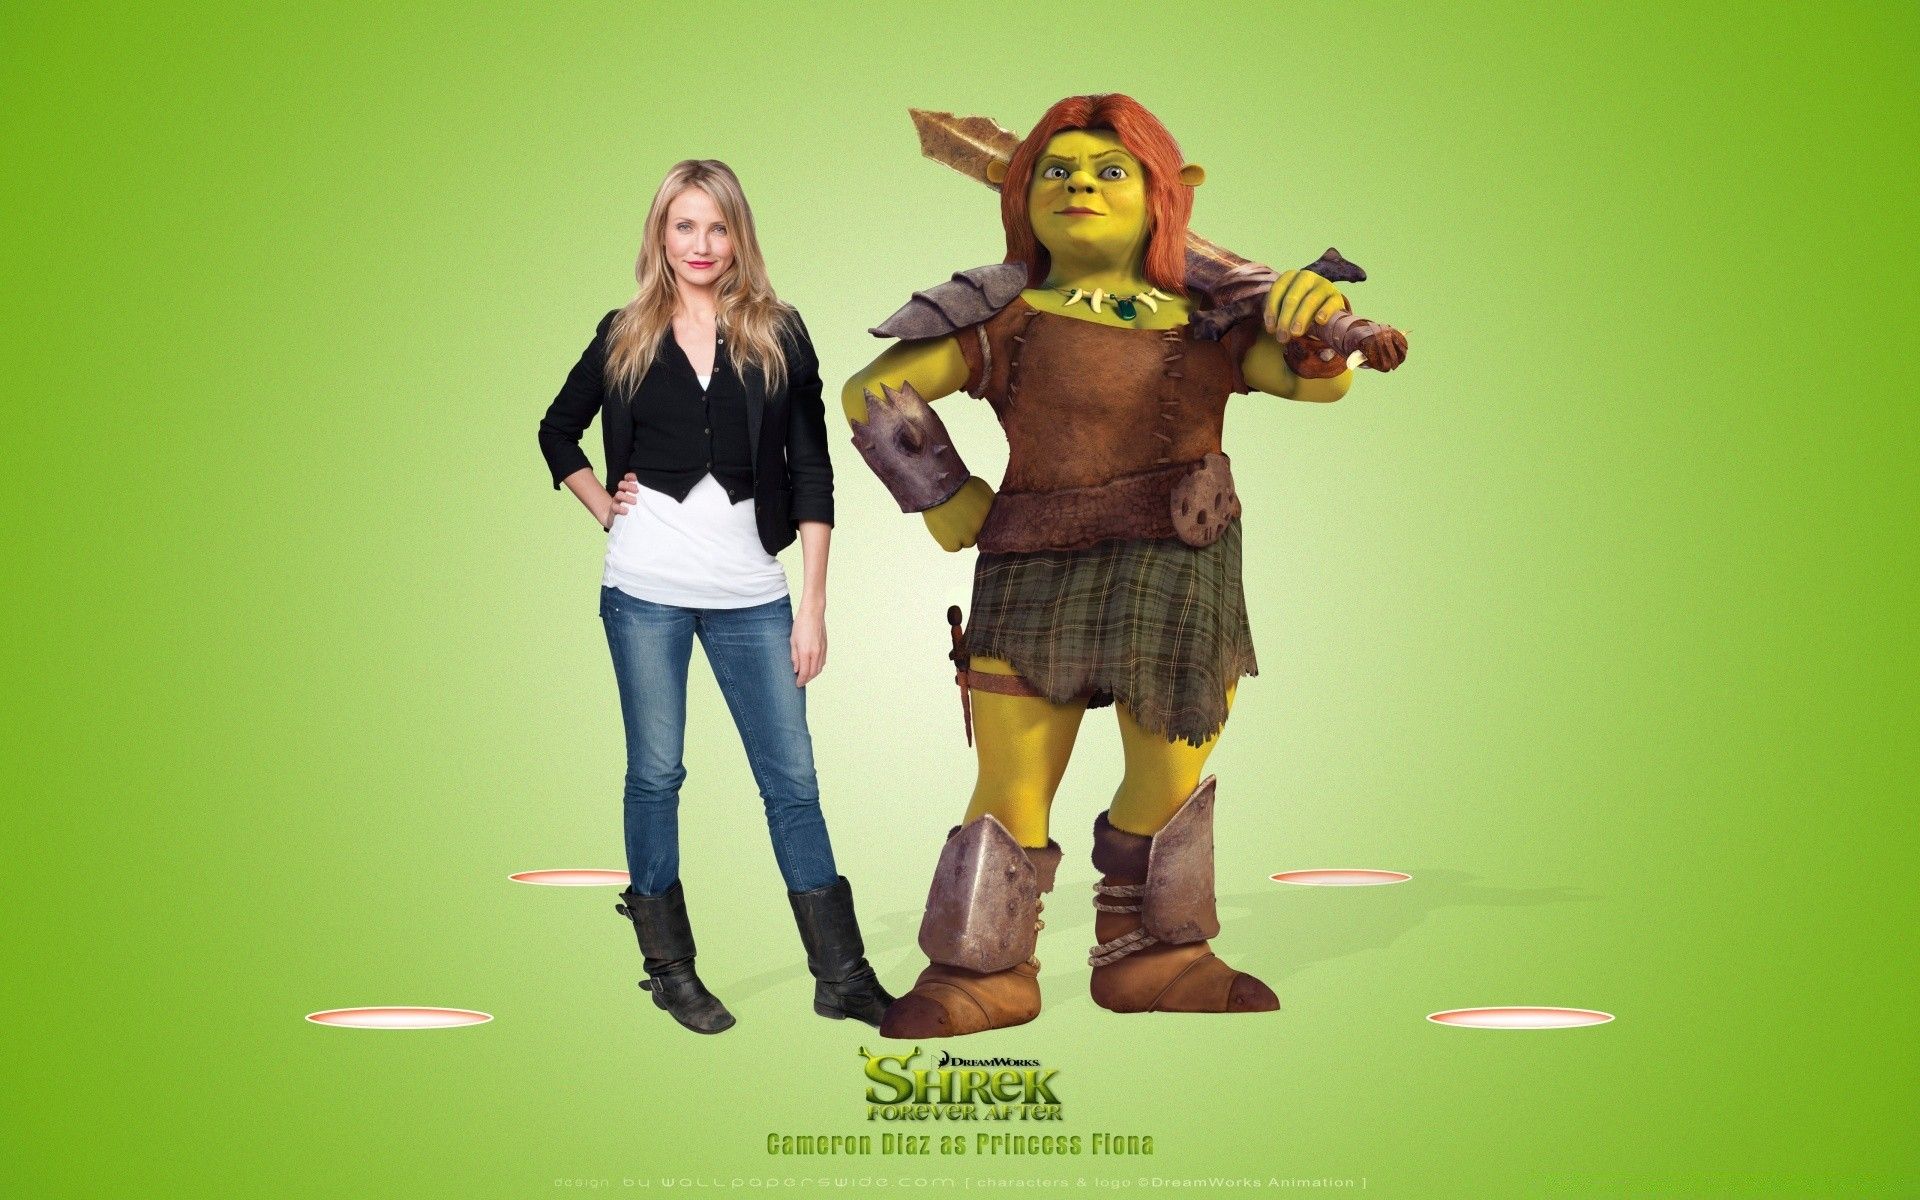 Cameron Diaz as Princess Fiona, Shrek Forever After